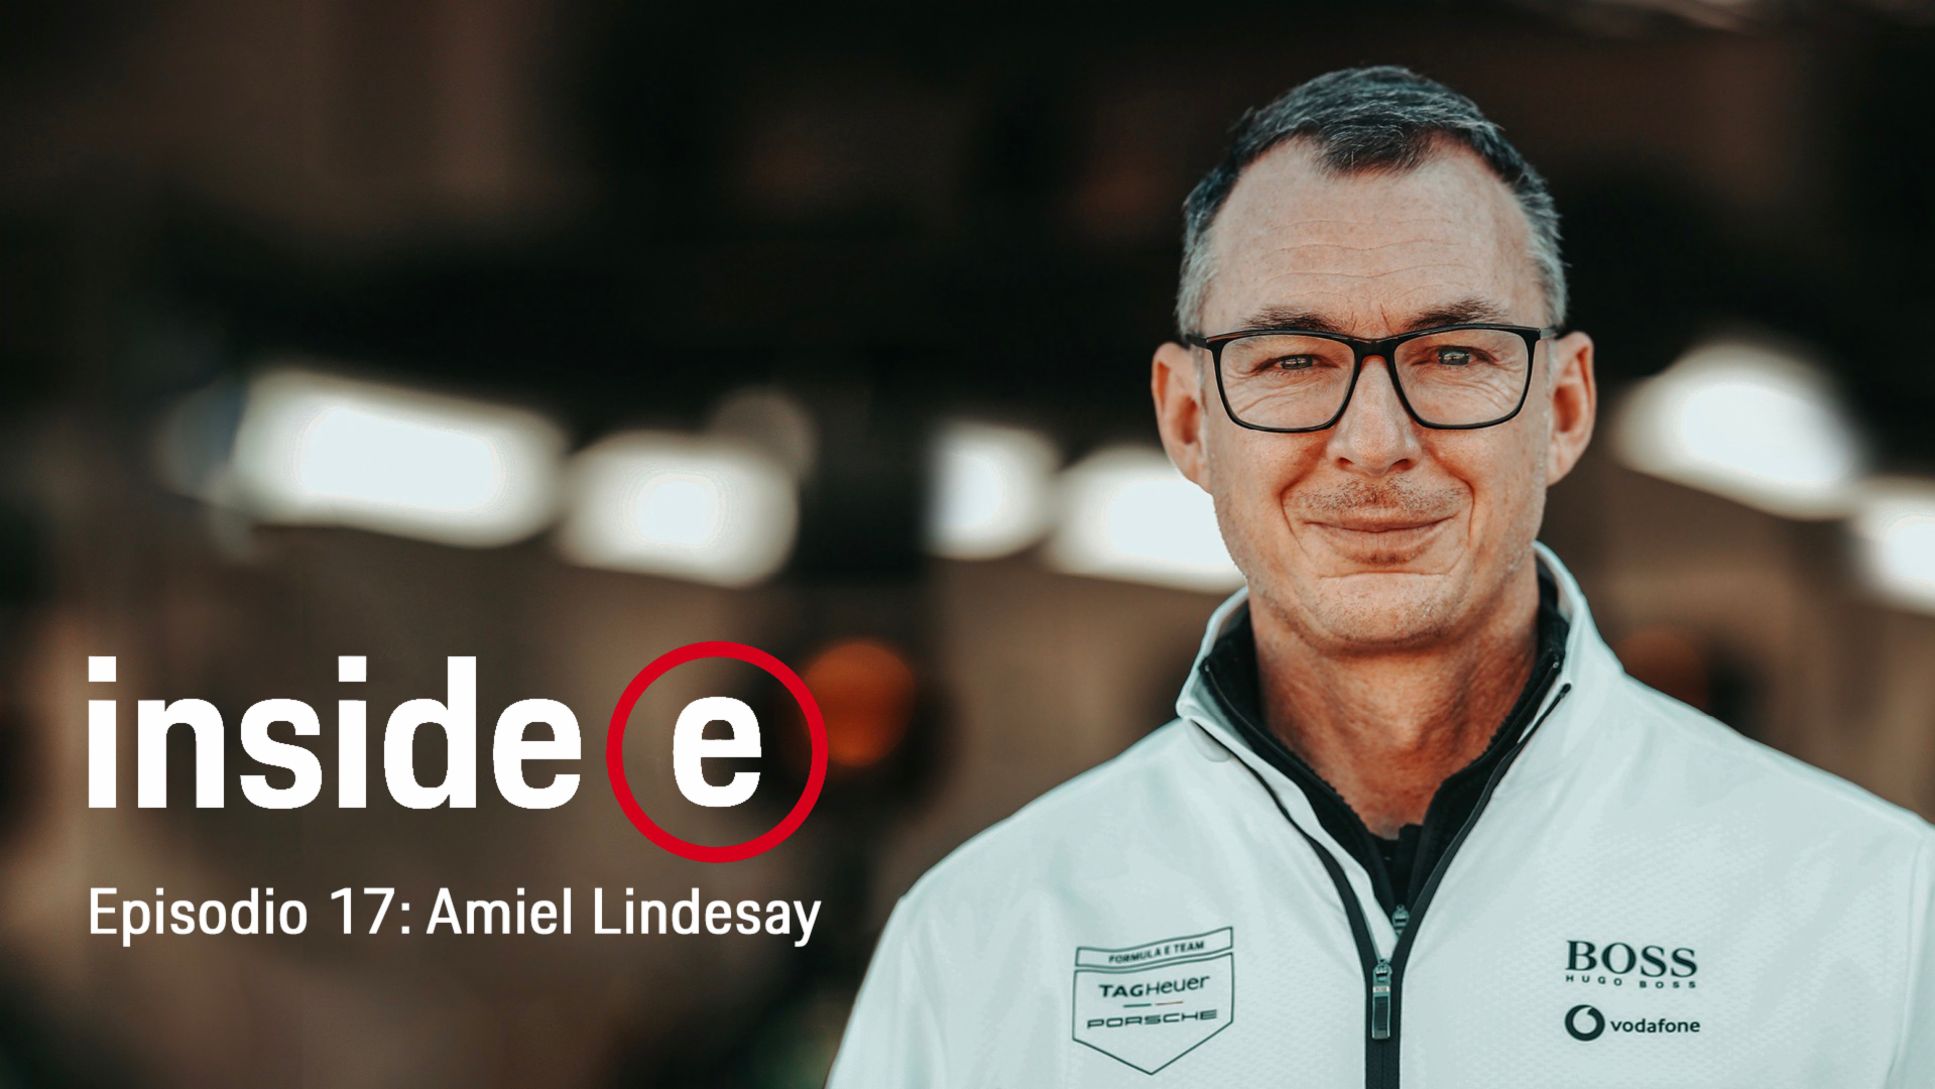 Podcast “Inside E”, episodio 17 con Amiel Lindesay, 2021, Porsche AG